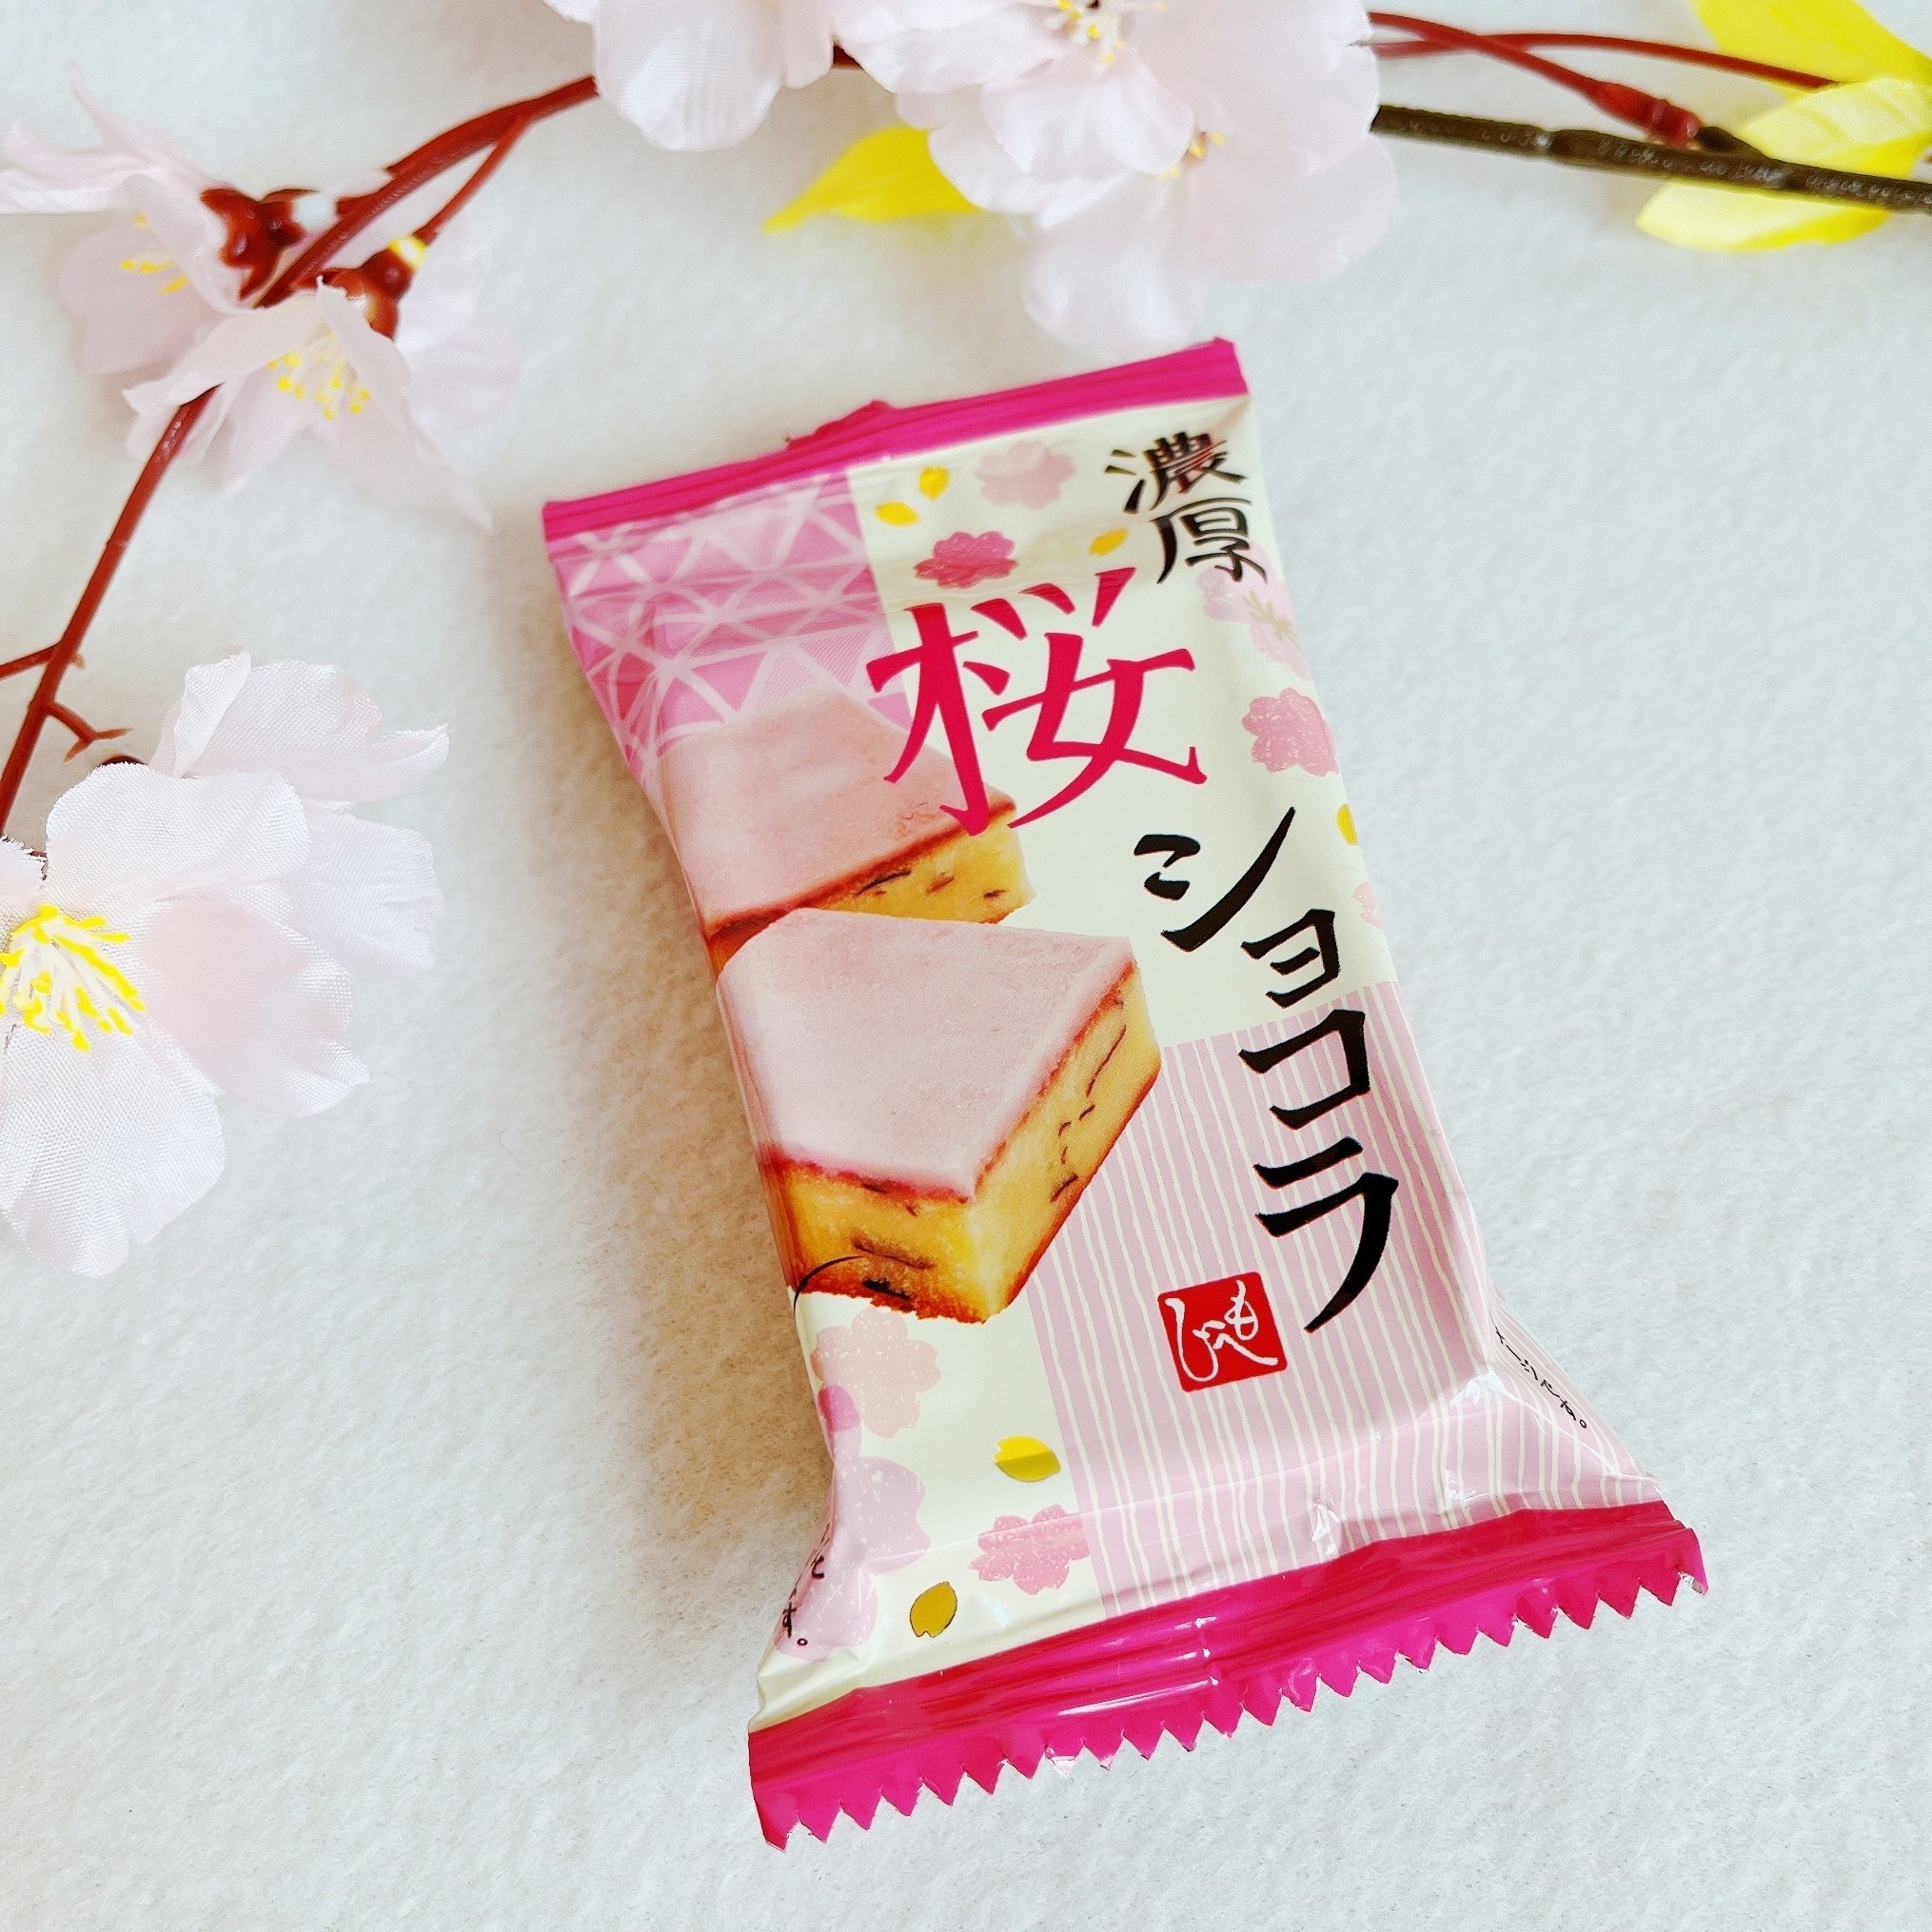 KALDI（カルディ）のおすすめスイーツ「濃厚桜ショコラ」